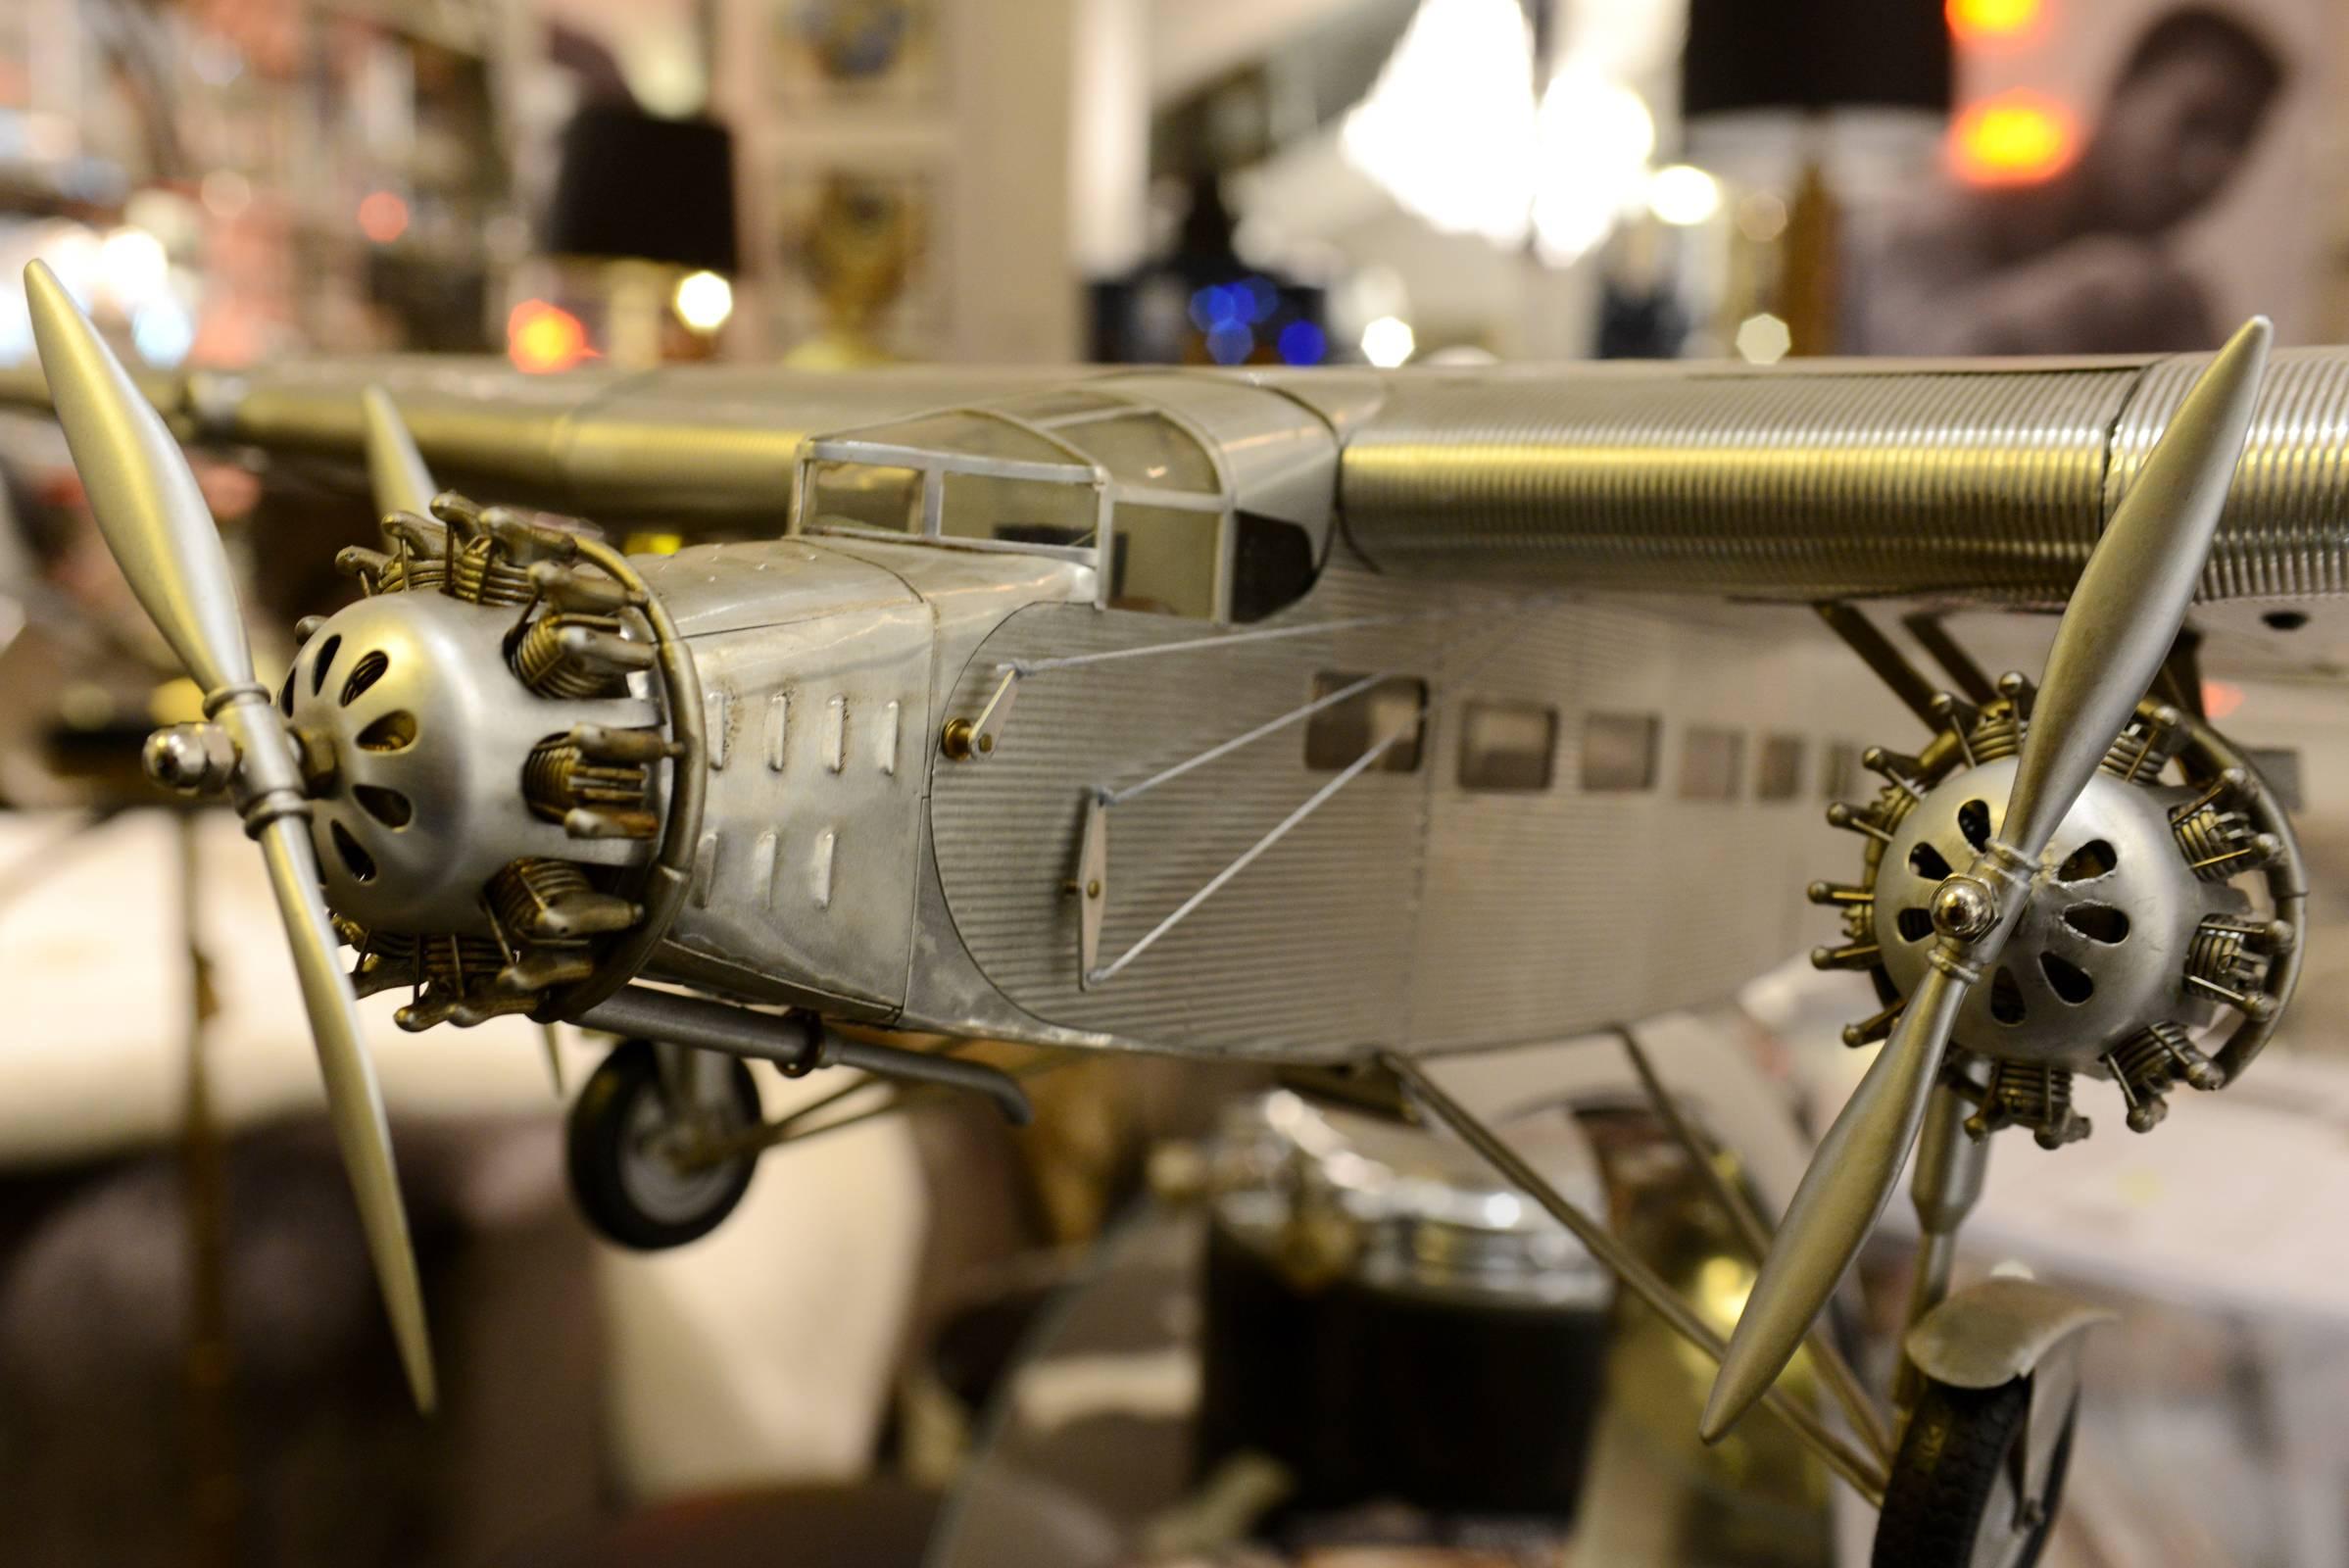 Trimotor-Flugzeugmodell Ford, handgefertigt aus Aluminium.
Hergestellt zwischen 1926 und 1933 von der Ford-Werkstatt 
fabrik. Flügelspannweite: 102cm.
